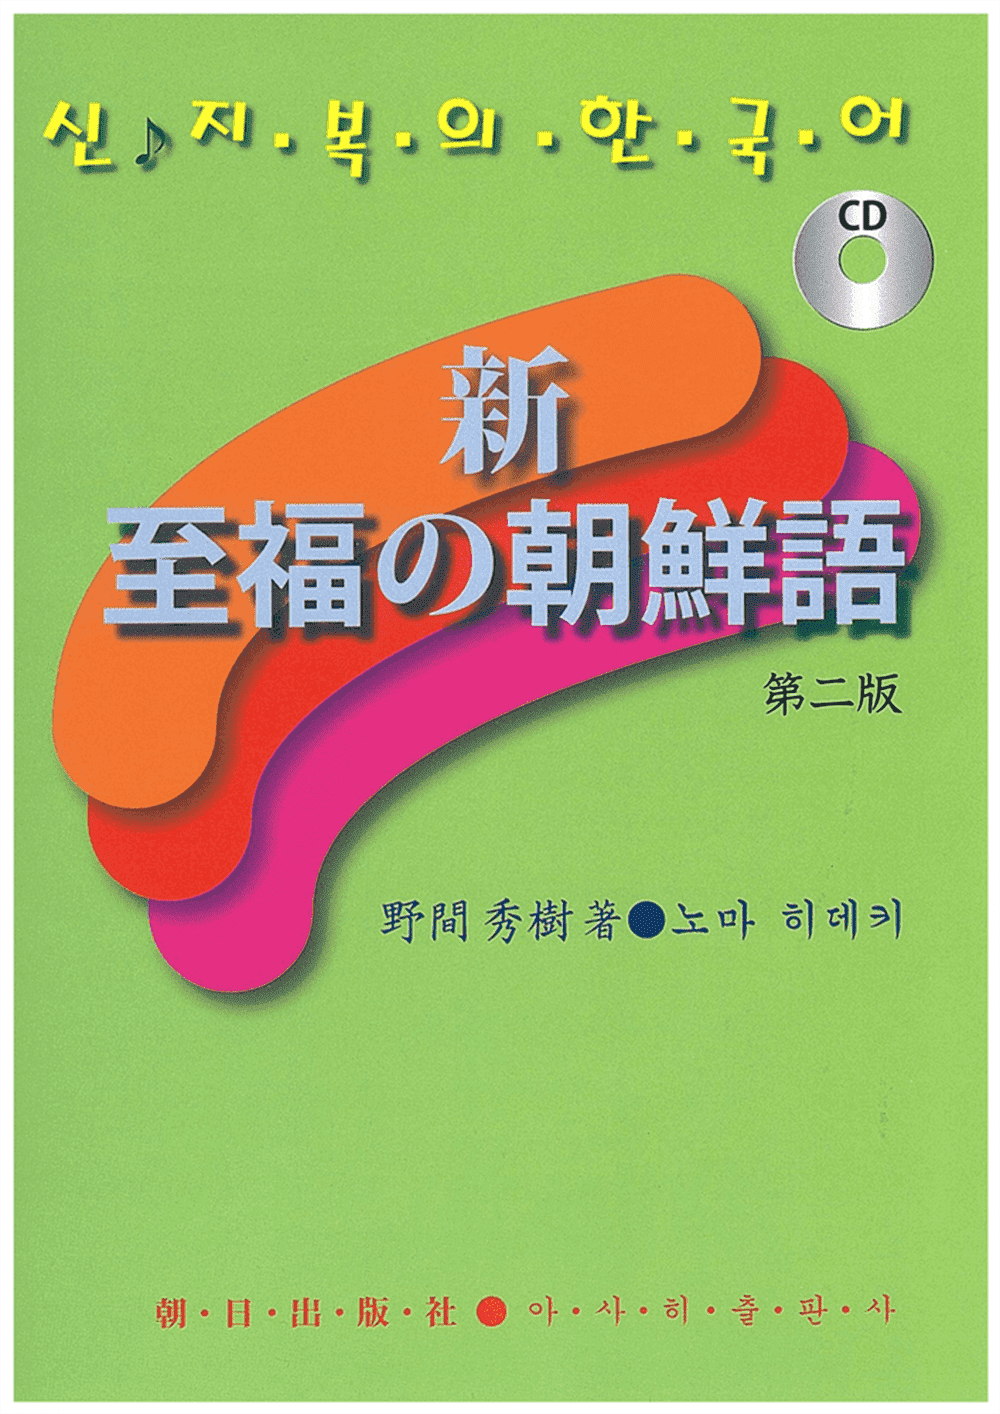 CD 新・至福の朝鮮語